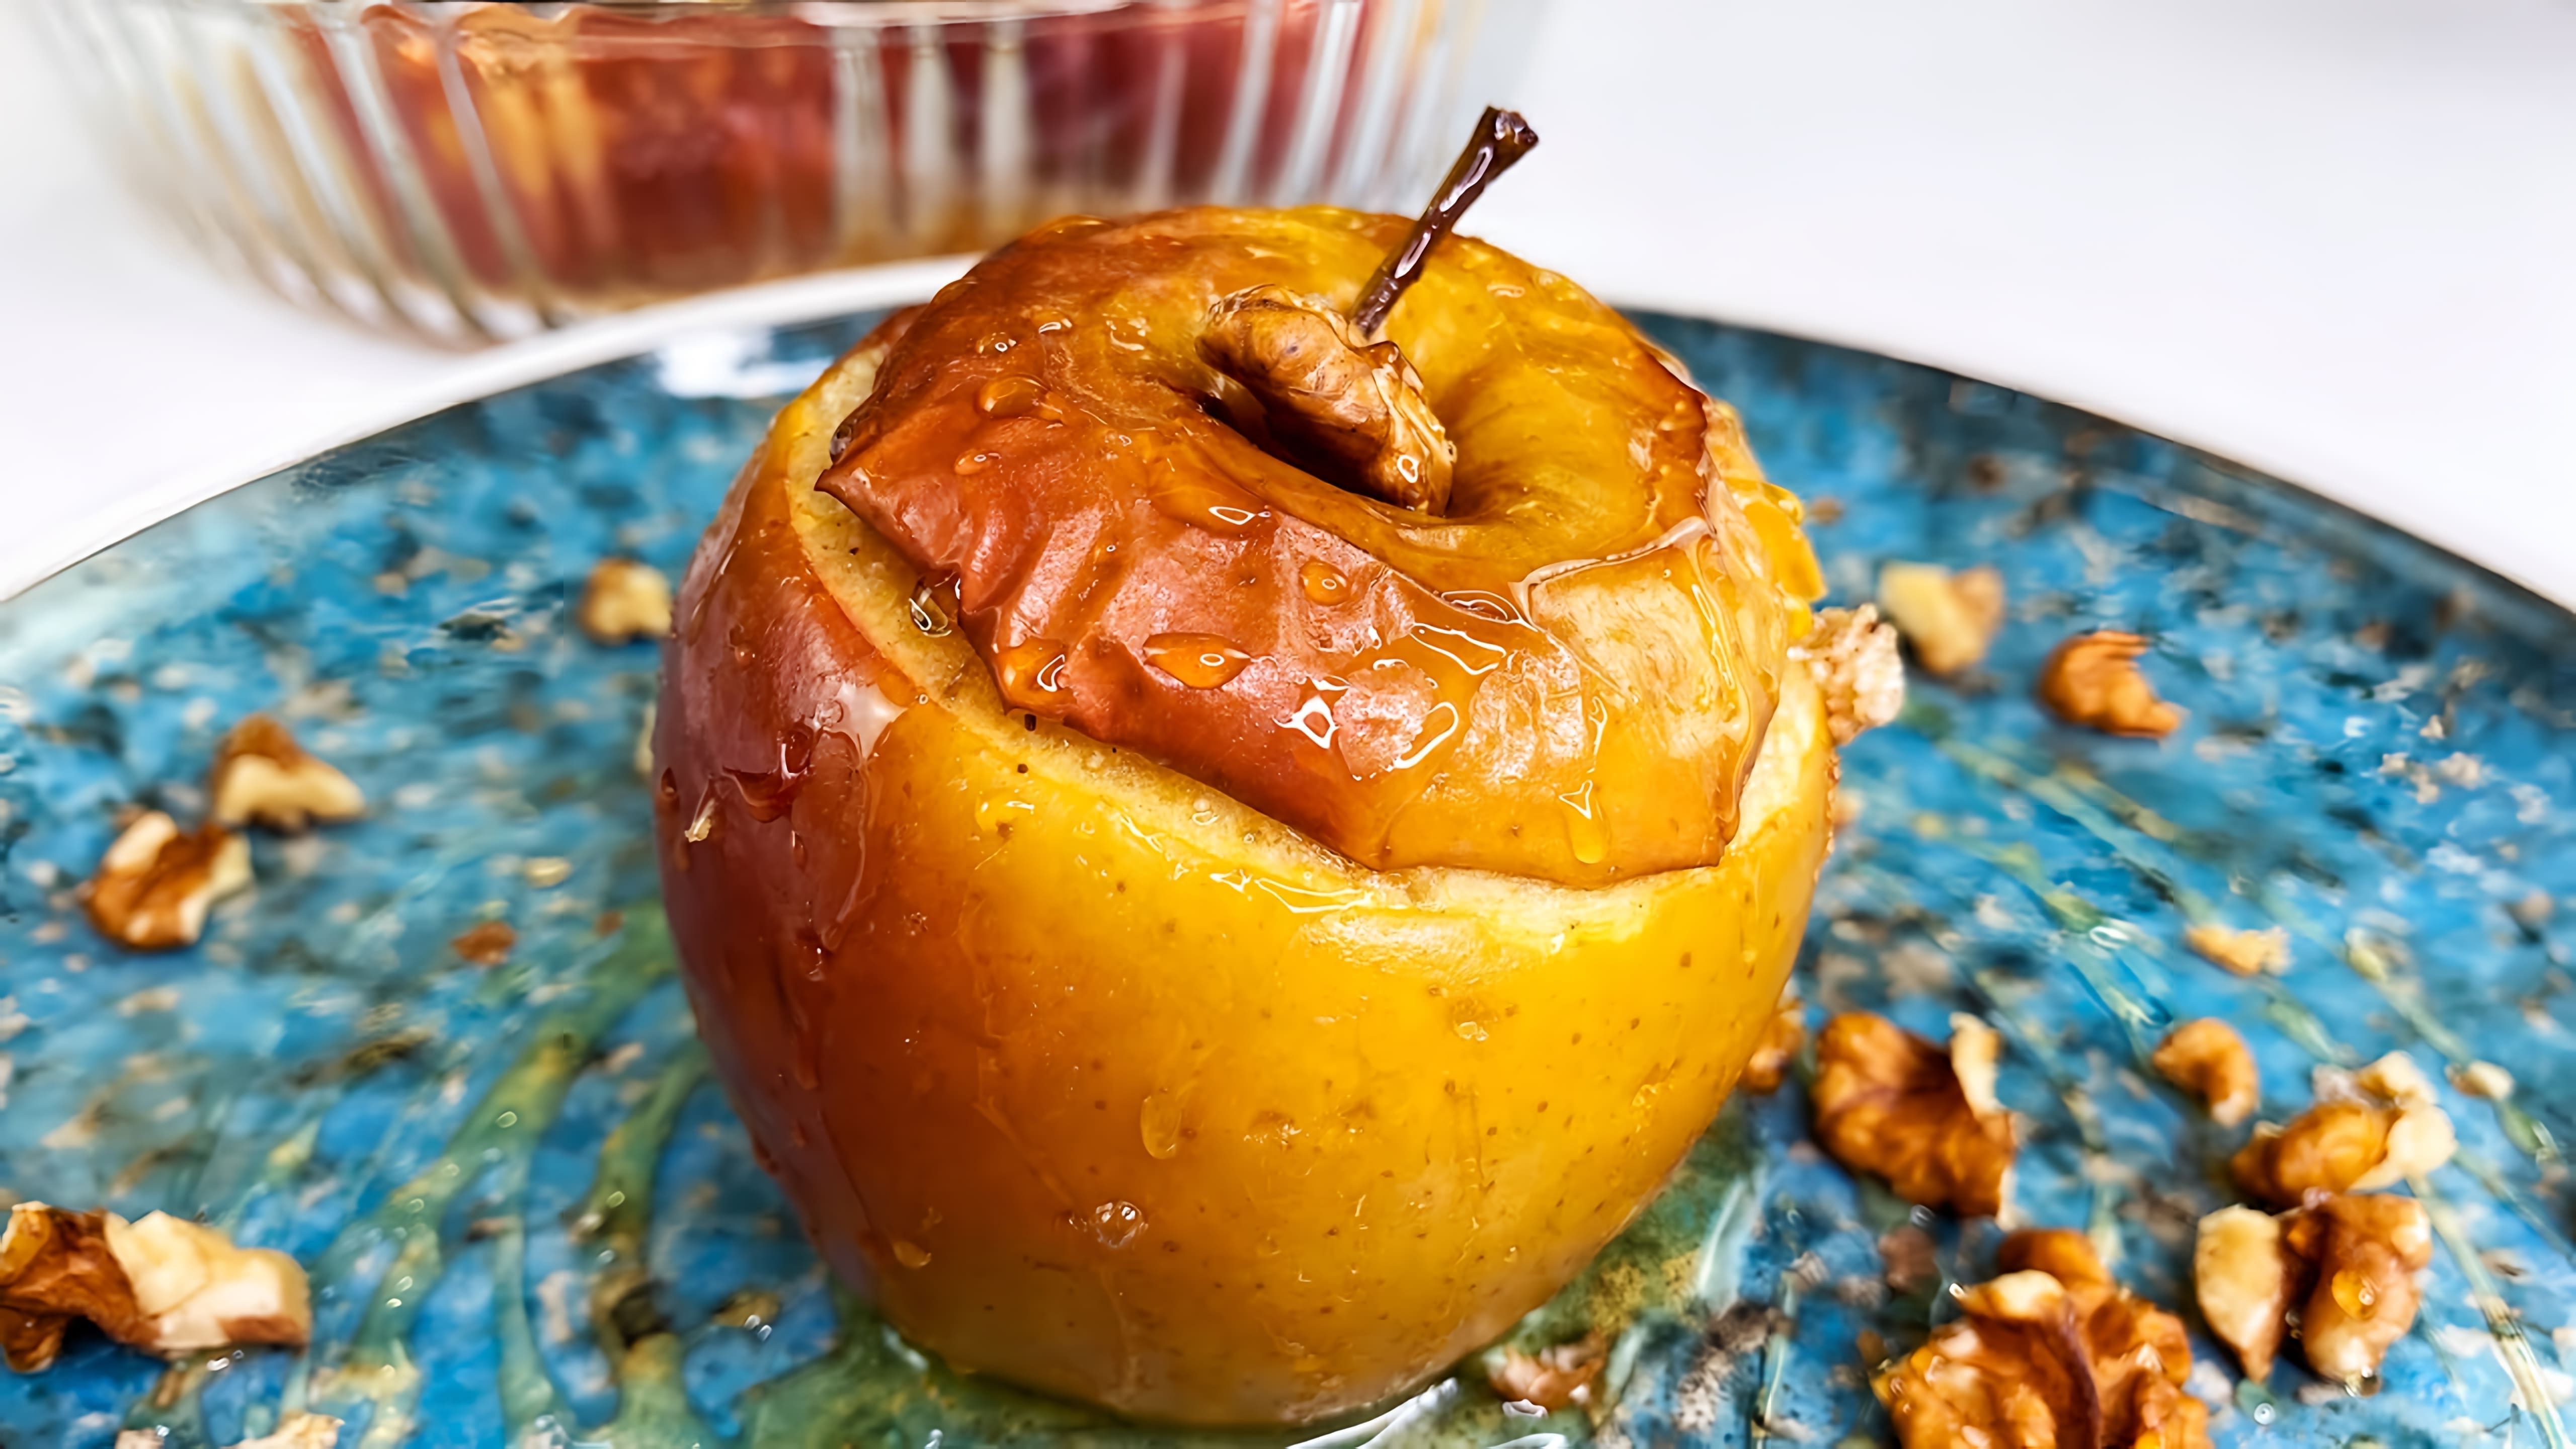 В этом видео демонстрируется рецепт приготовления запеченных яблок с творогом, изюмом, курагой и медом